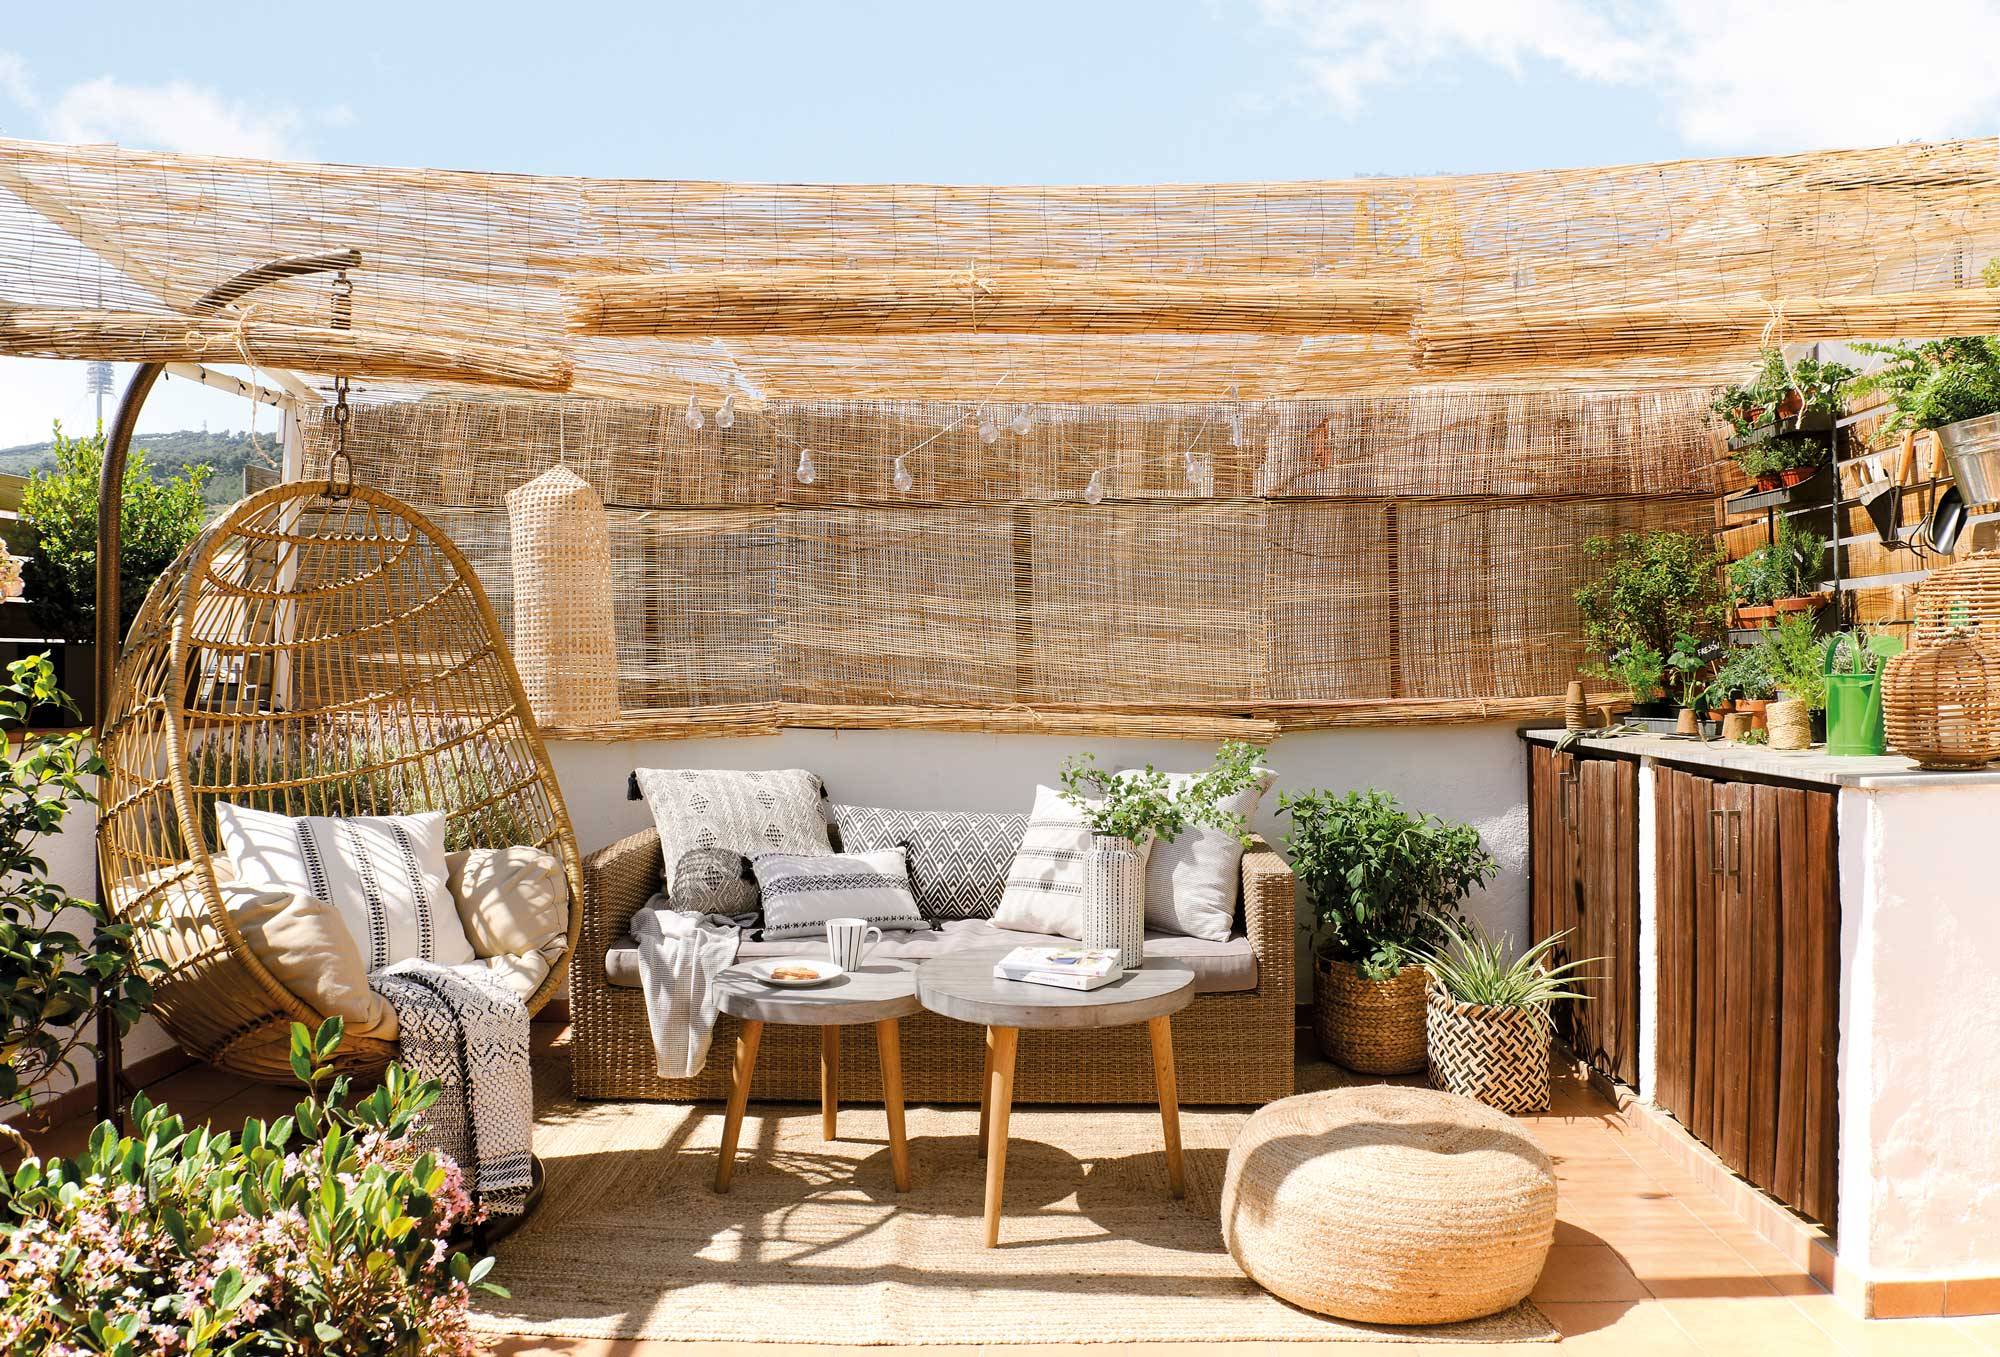 Rincón chill out en terraza con sofá de fibra, mesas de centro en madera y cemento y sillón balanc��n.